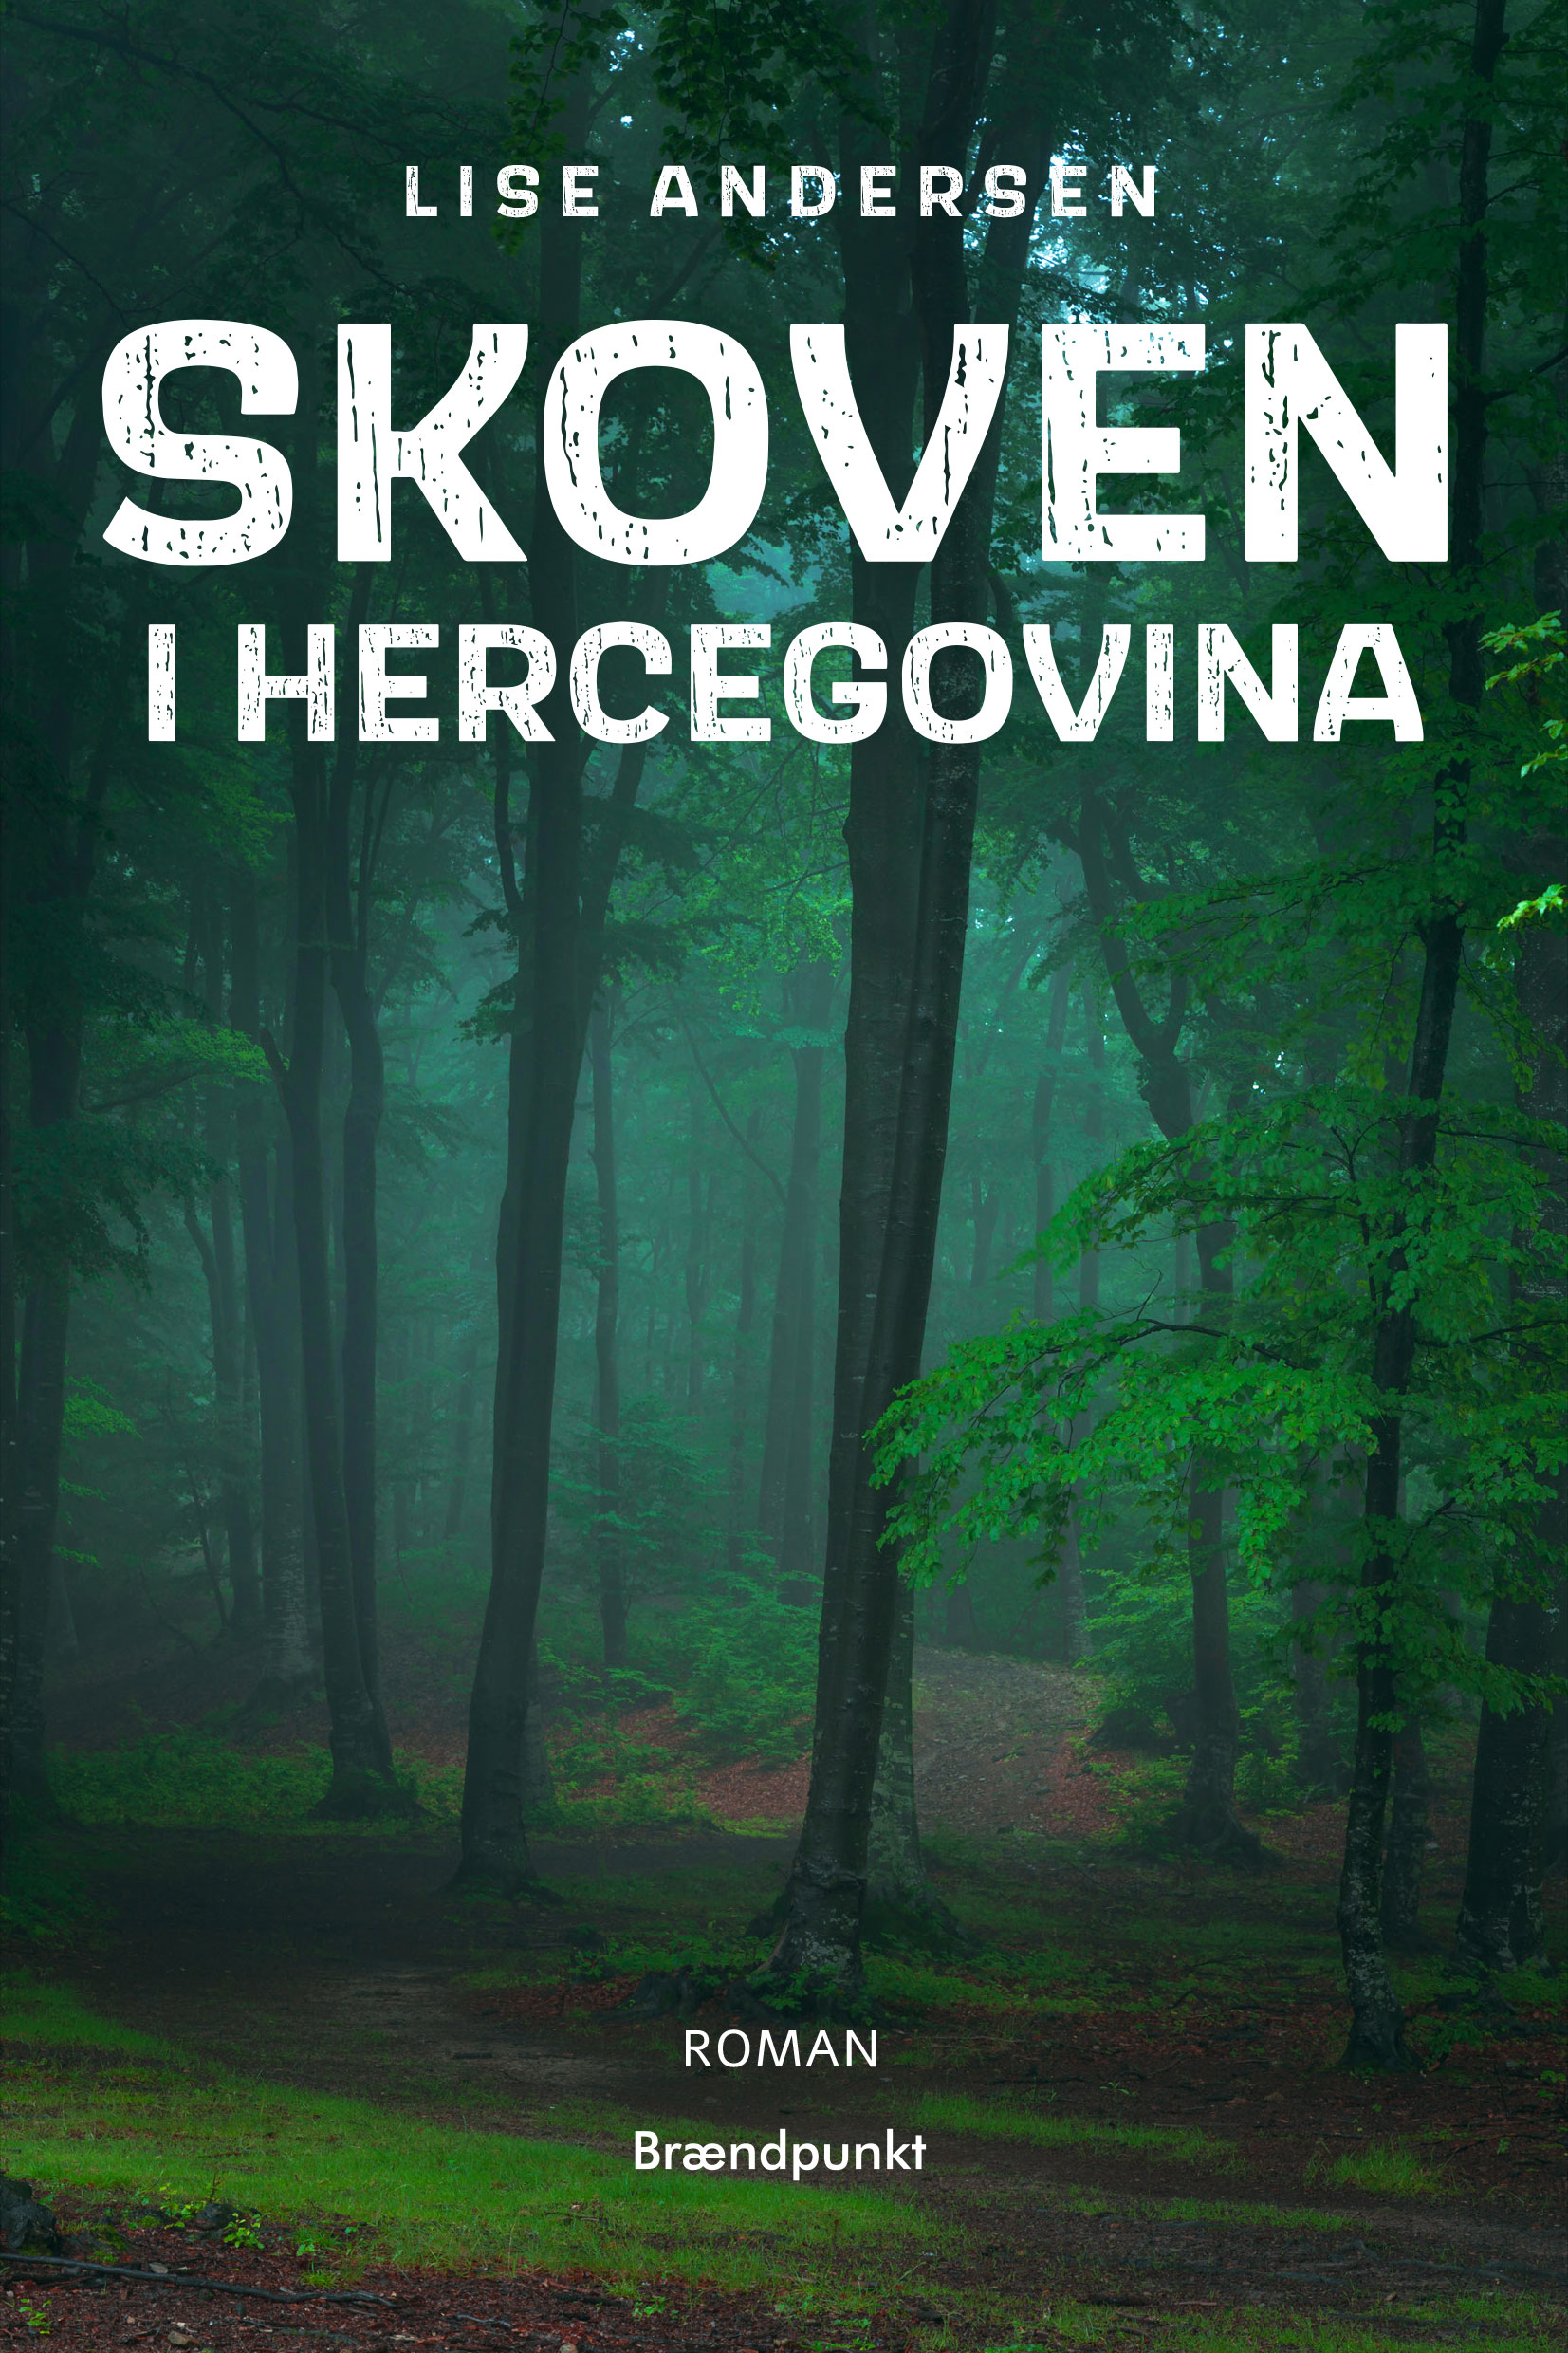 Skoven i Hercegovina af Lise Andersen, roman 